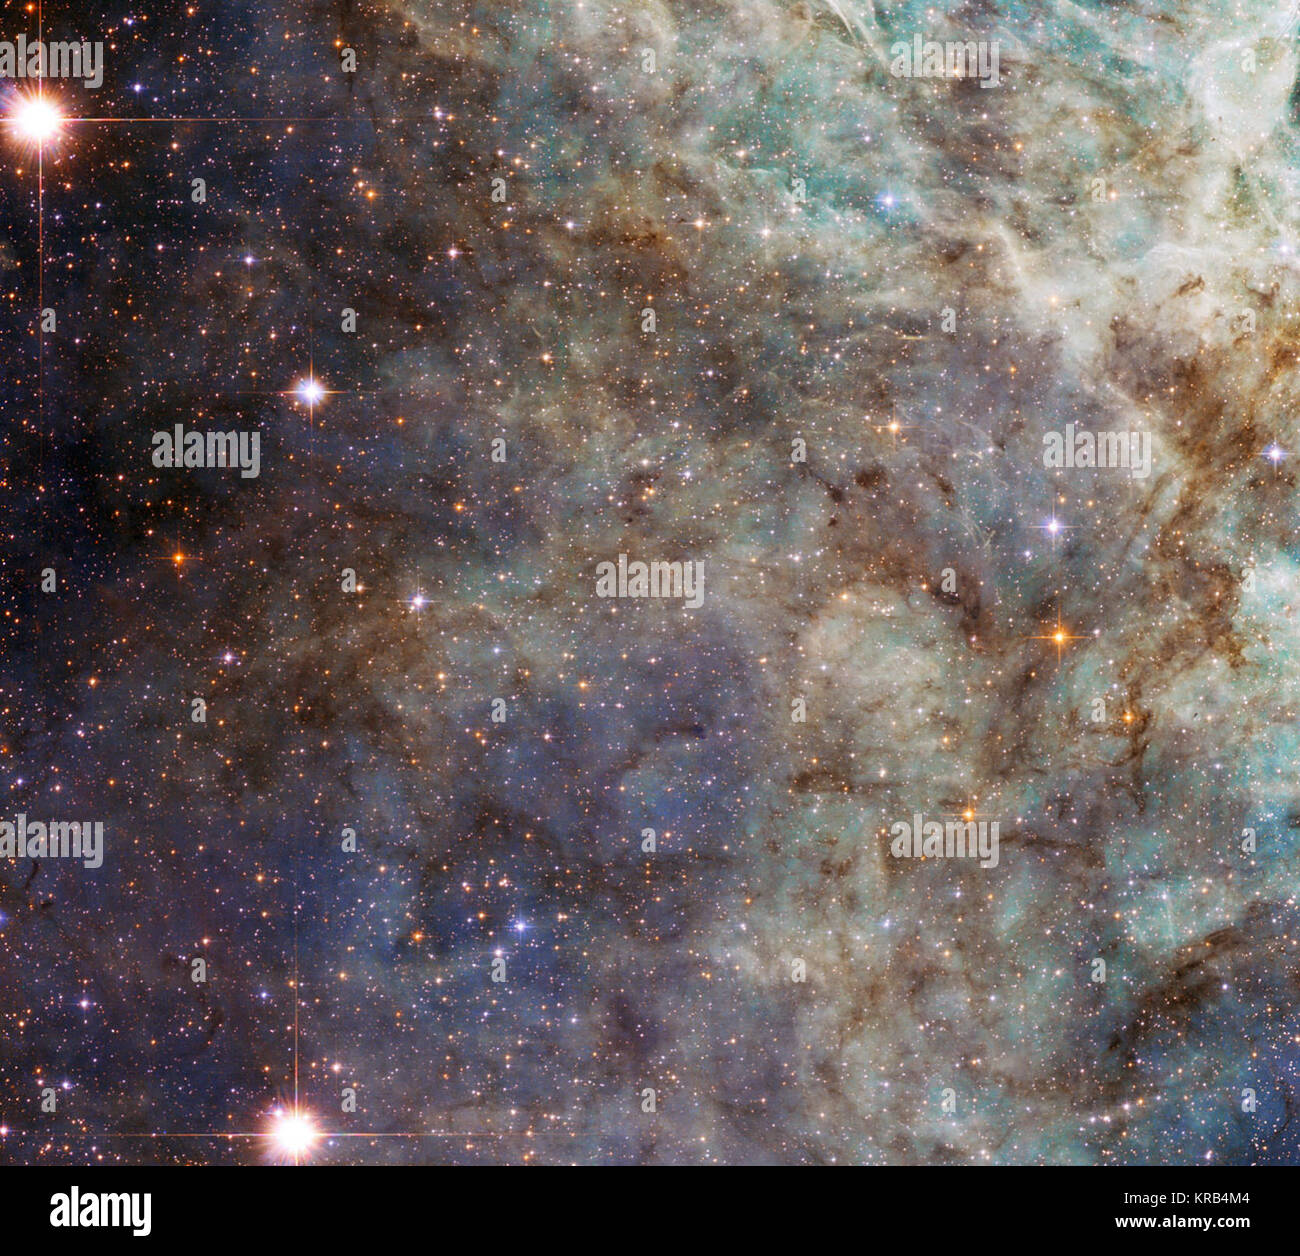 Ruotando il suo 2,4-metro occhio al Tarantula Nebula, la NASA/ESA Telescopio Spaziale Hubble ha preso questa close-up della periferia del cloud principale della nebulosa. Il luminoso wispy strutture sono la firma di un ambiente ricco di ionizzare il gas idrogeno, chiamato H II dagli astronomi. In realtà questi appaiono in rosso ma la scelta dei filtri e i colori di questa immagine, che include le esposizioni sia nel visibile e la luce a infrarossi, rendono il gas appaiono in verde. Queste regioni contengono formata di recente stelle che emettono potenti radiazione ultravioletta che ionises il gas intorno a loro. Queste nubi effimero Foto Stock